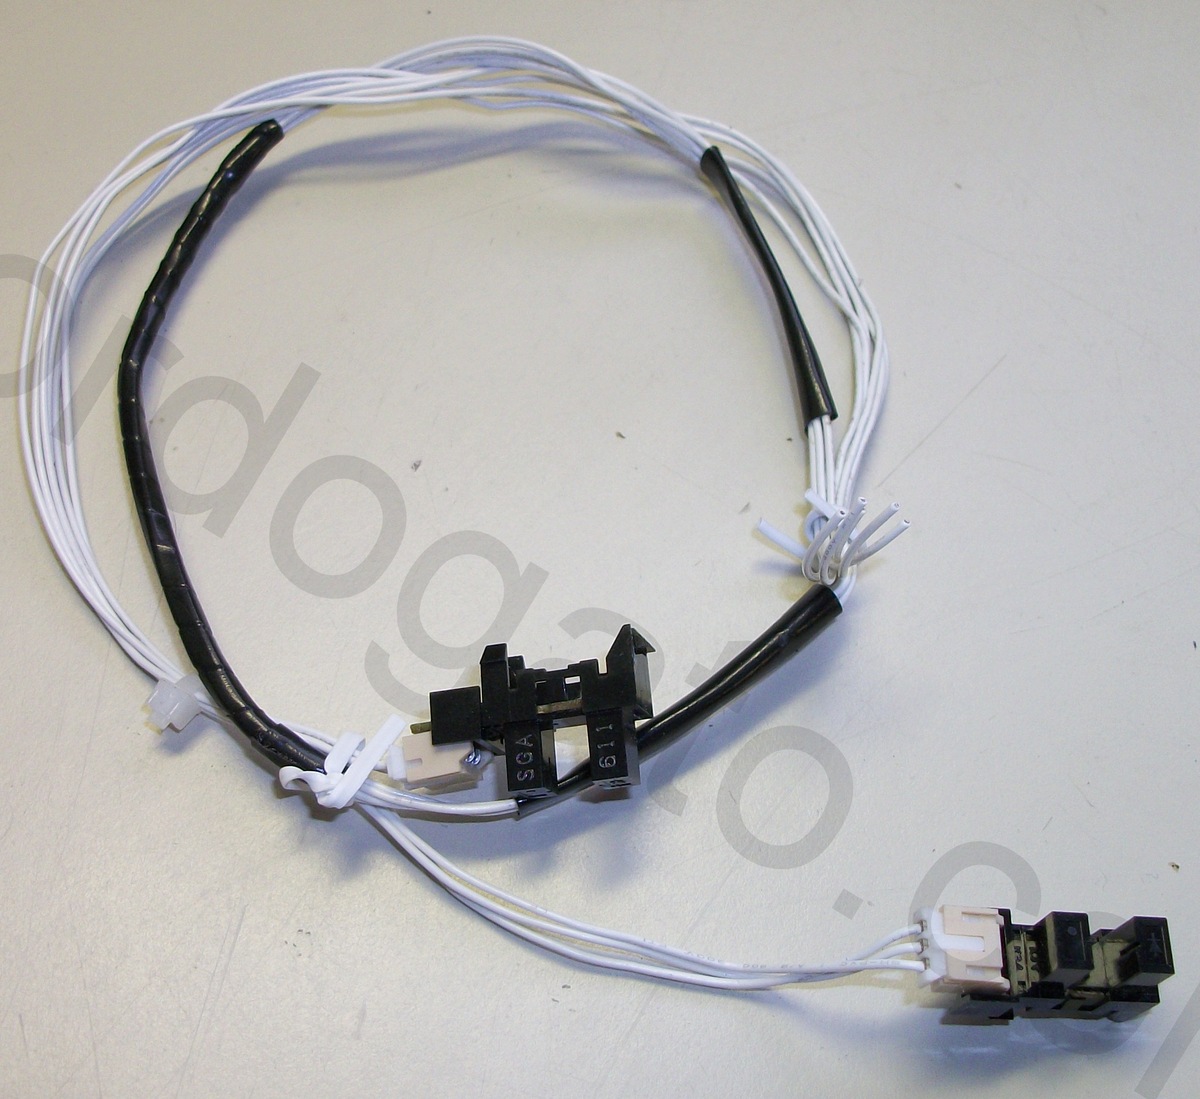 2 Photo Gates w/ plugs, cable SGA 611